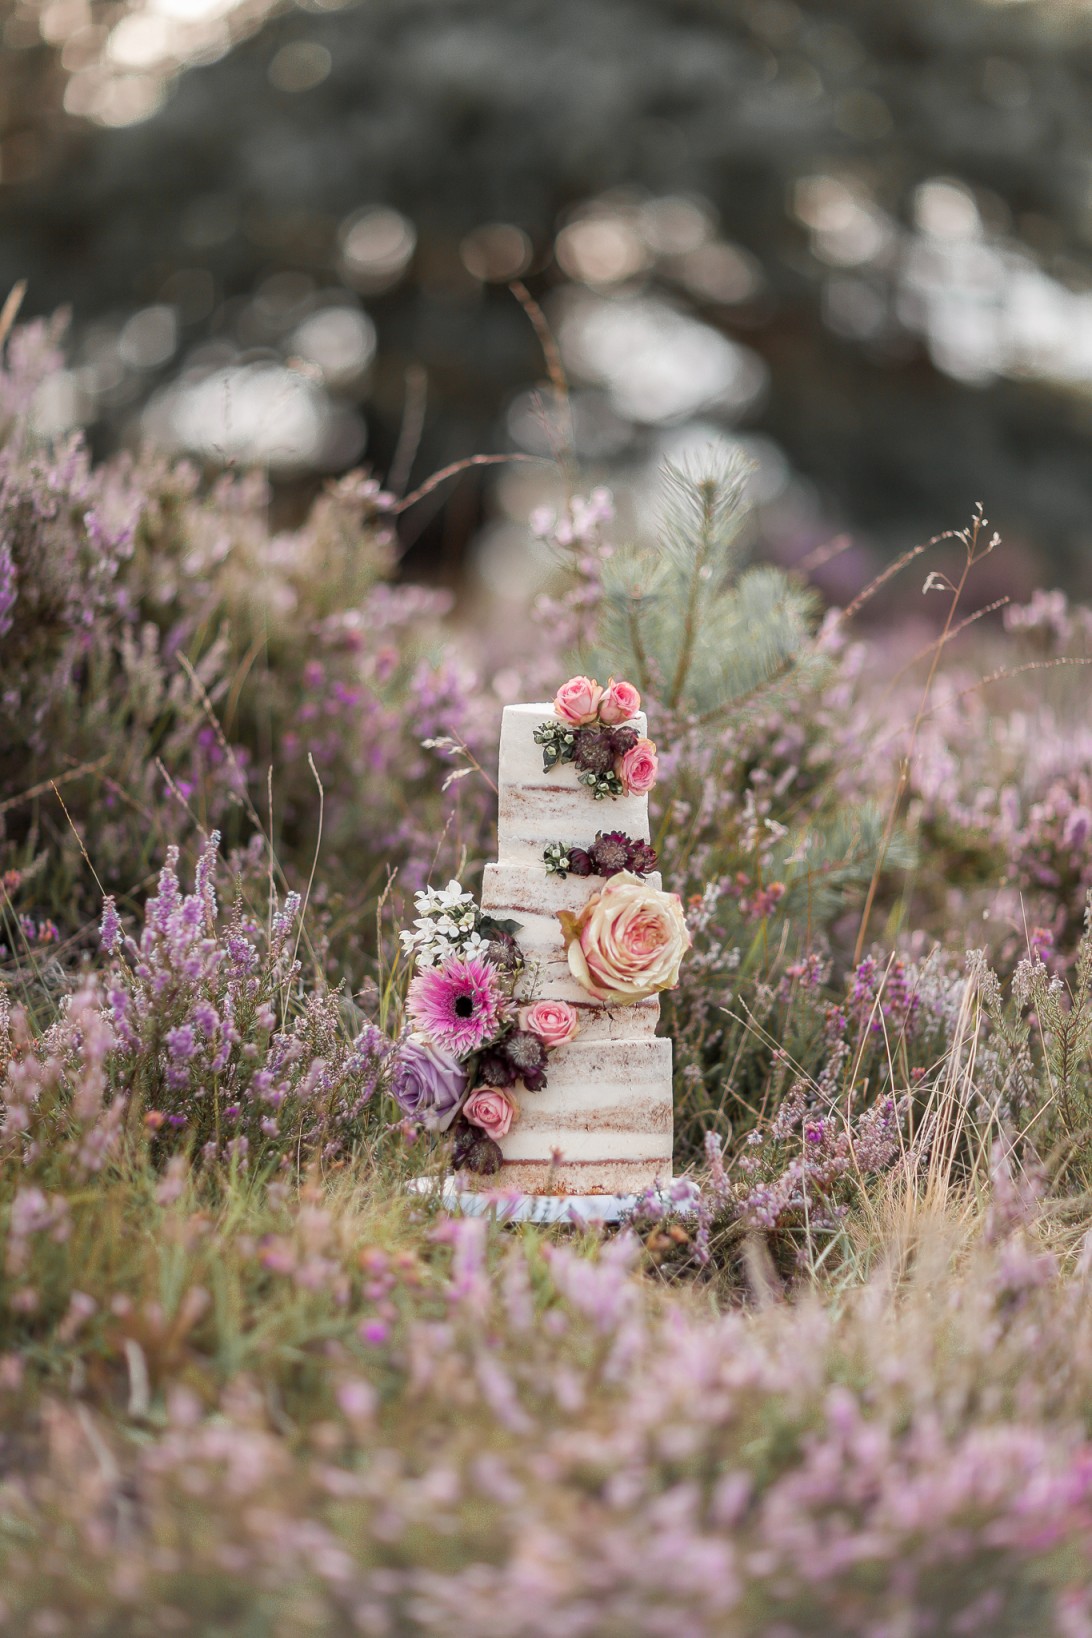 Tiny Sarah's Cakes - vegan wedding cakes - creative wedding cake - unique wedding cakes - alternative wedding cake 2 (2)